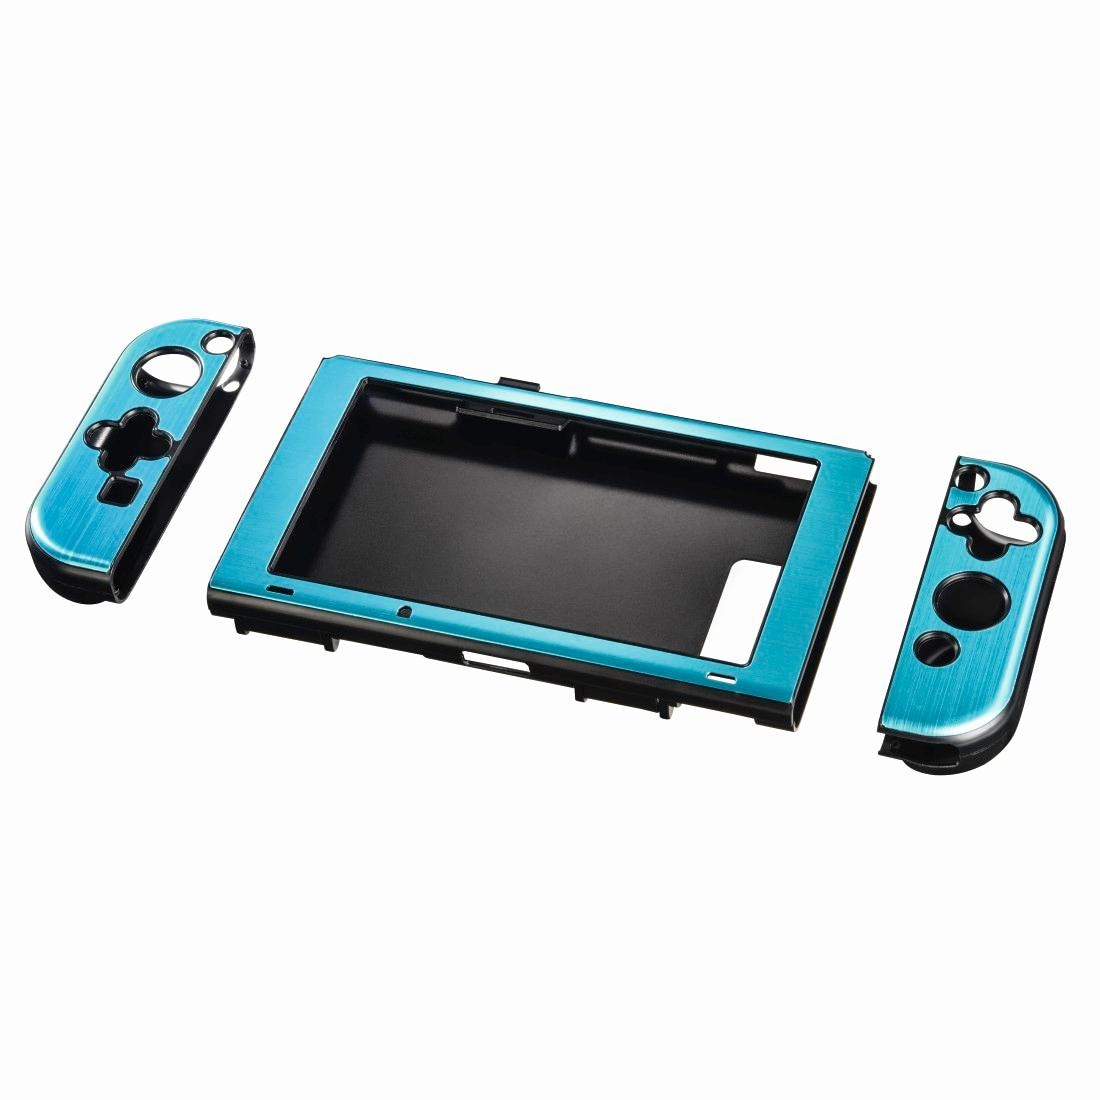 Zubehör Nintendo »Hardcover für Nintendo Switch, 3-teilig, Metallic-Blau«